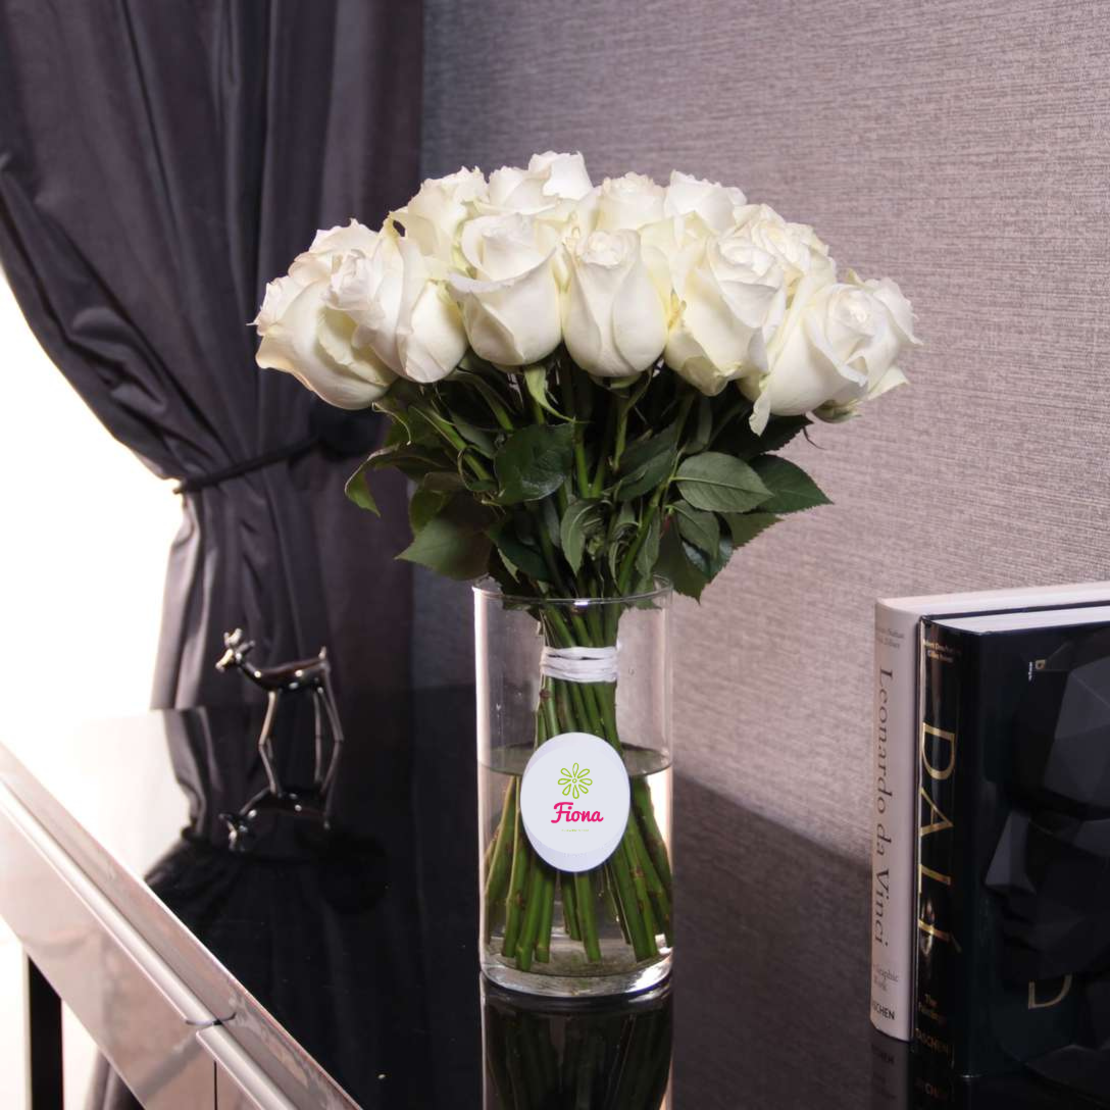 White roses in the vase